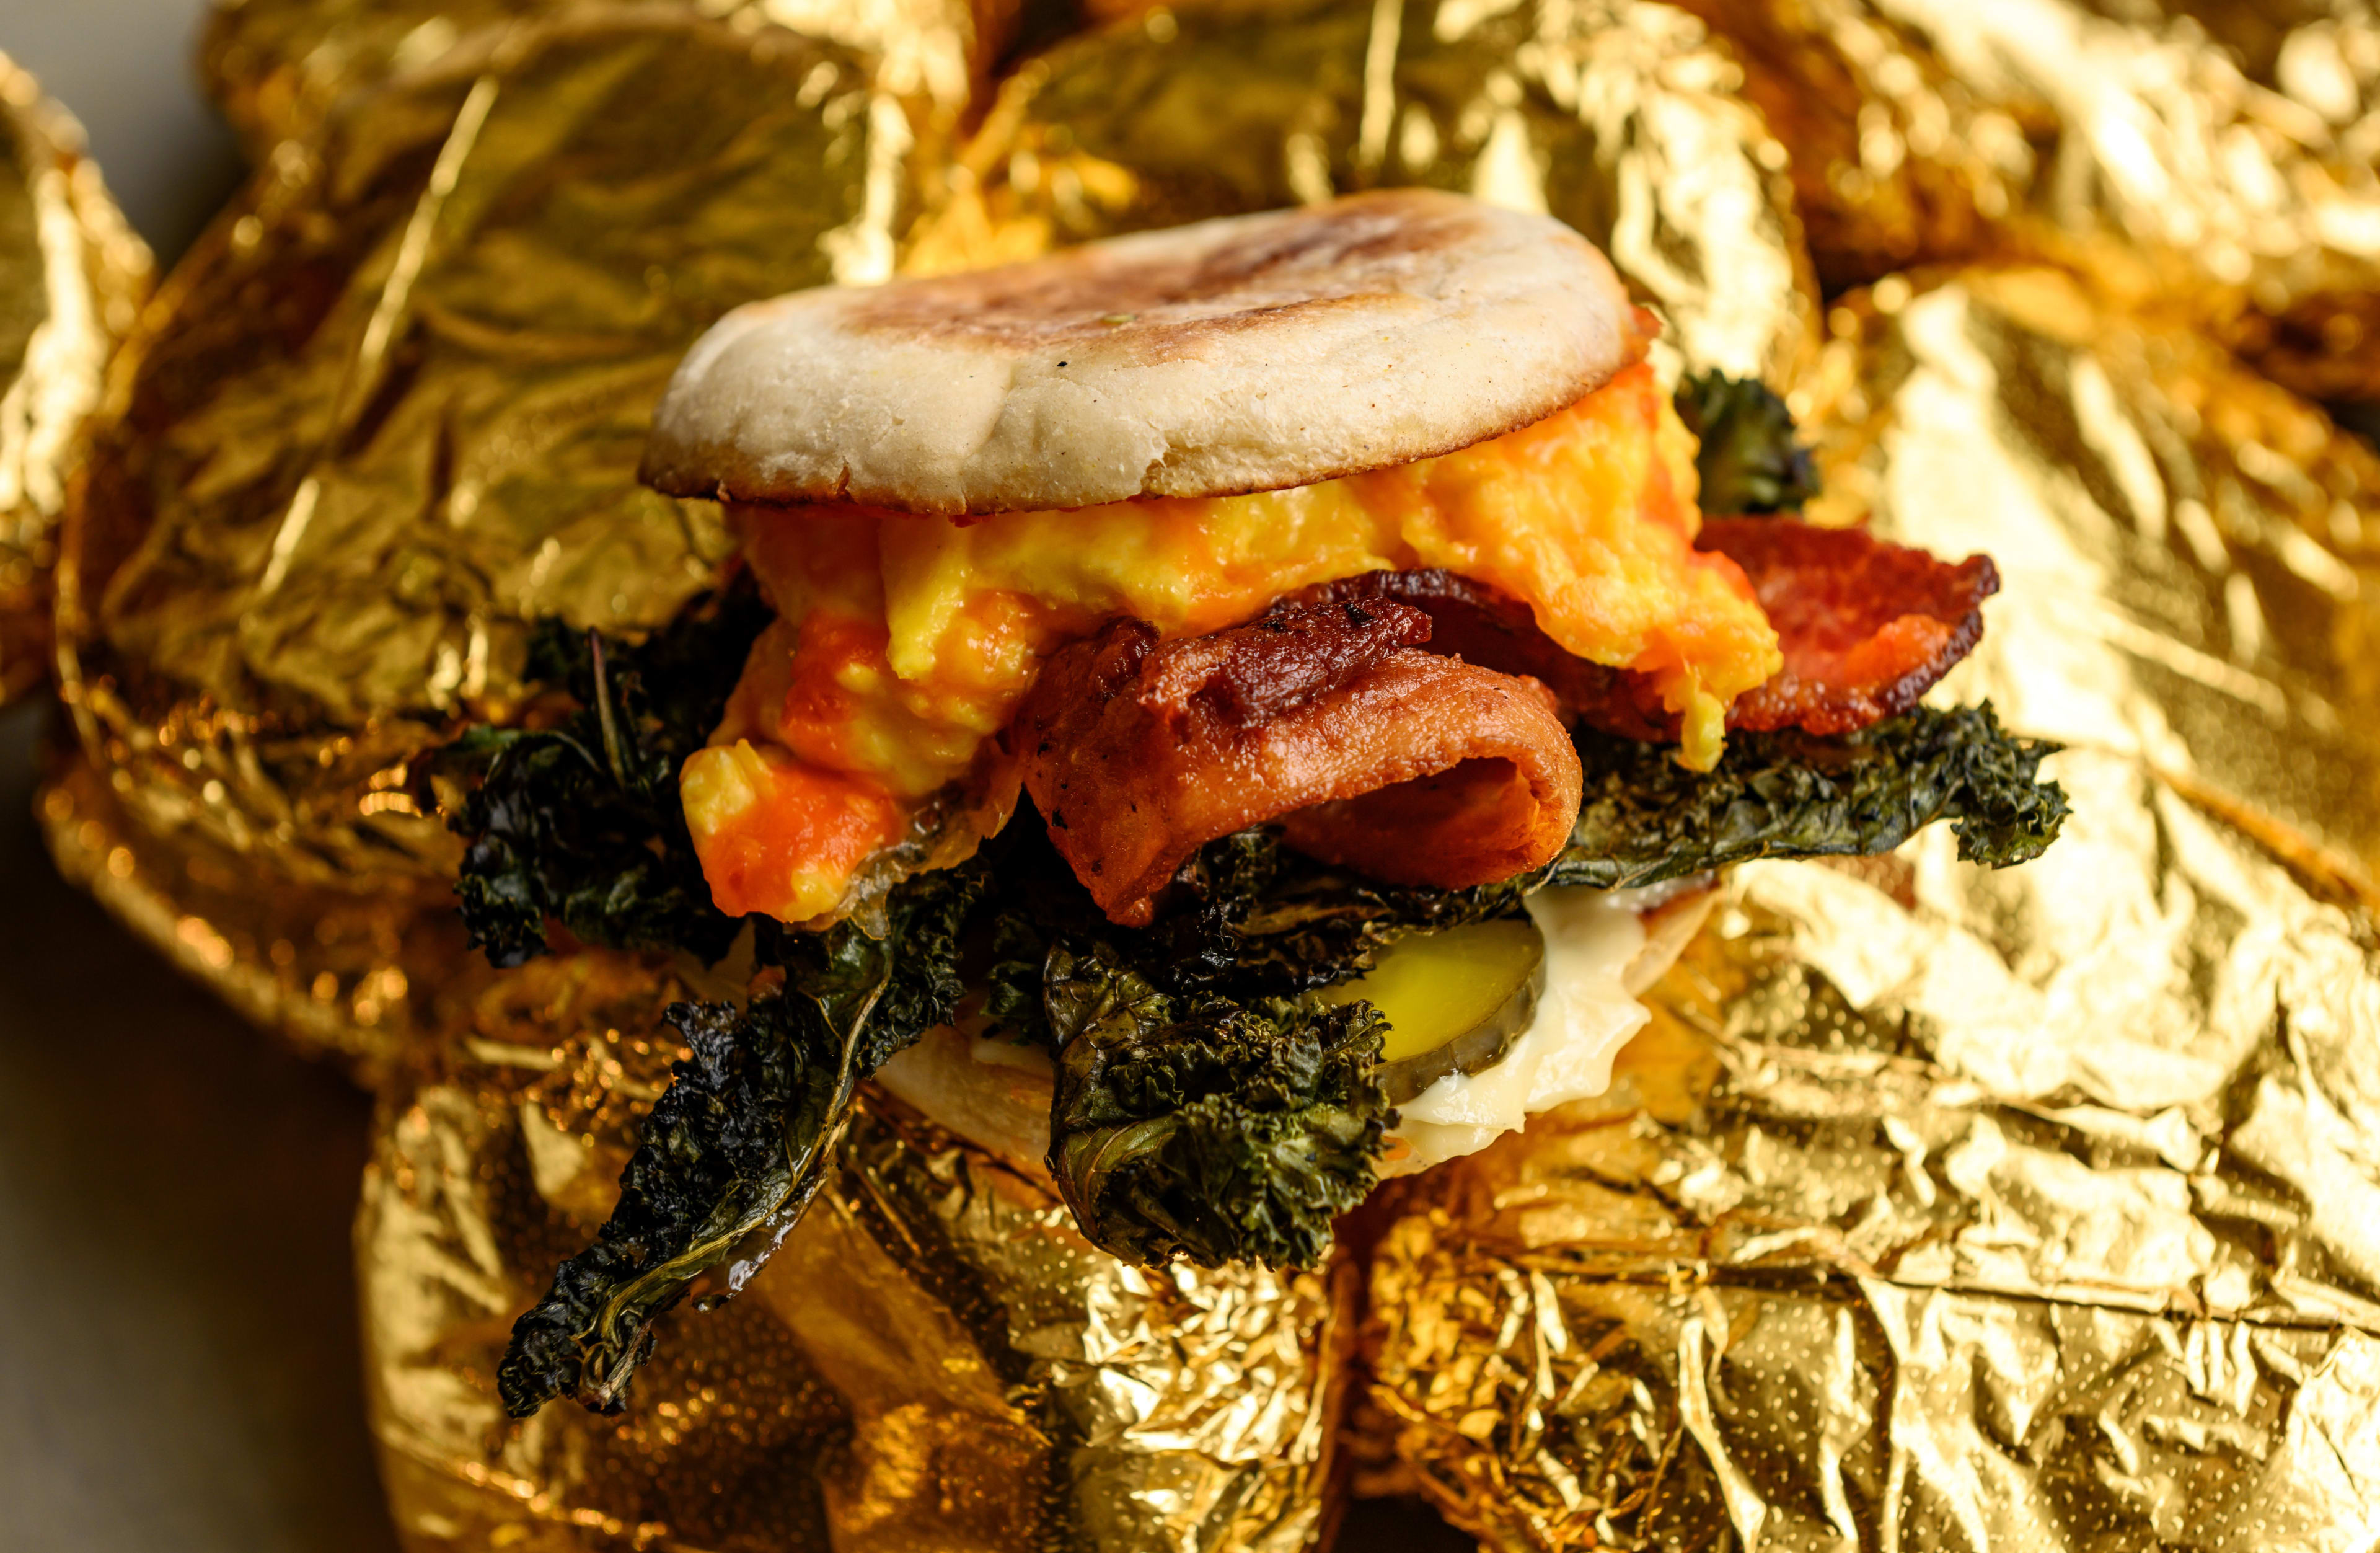 Breakfast sandwich from Gold Standard in Toronto